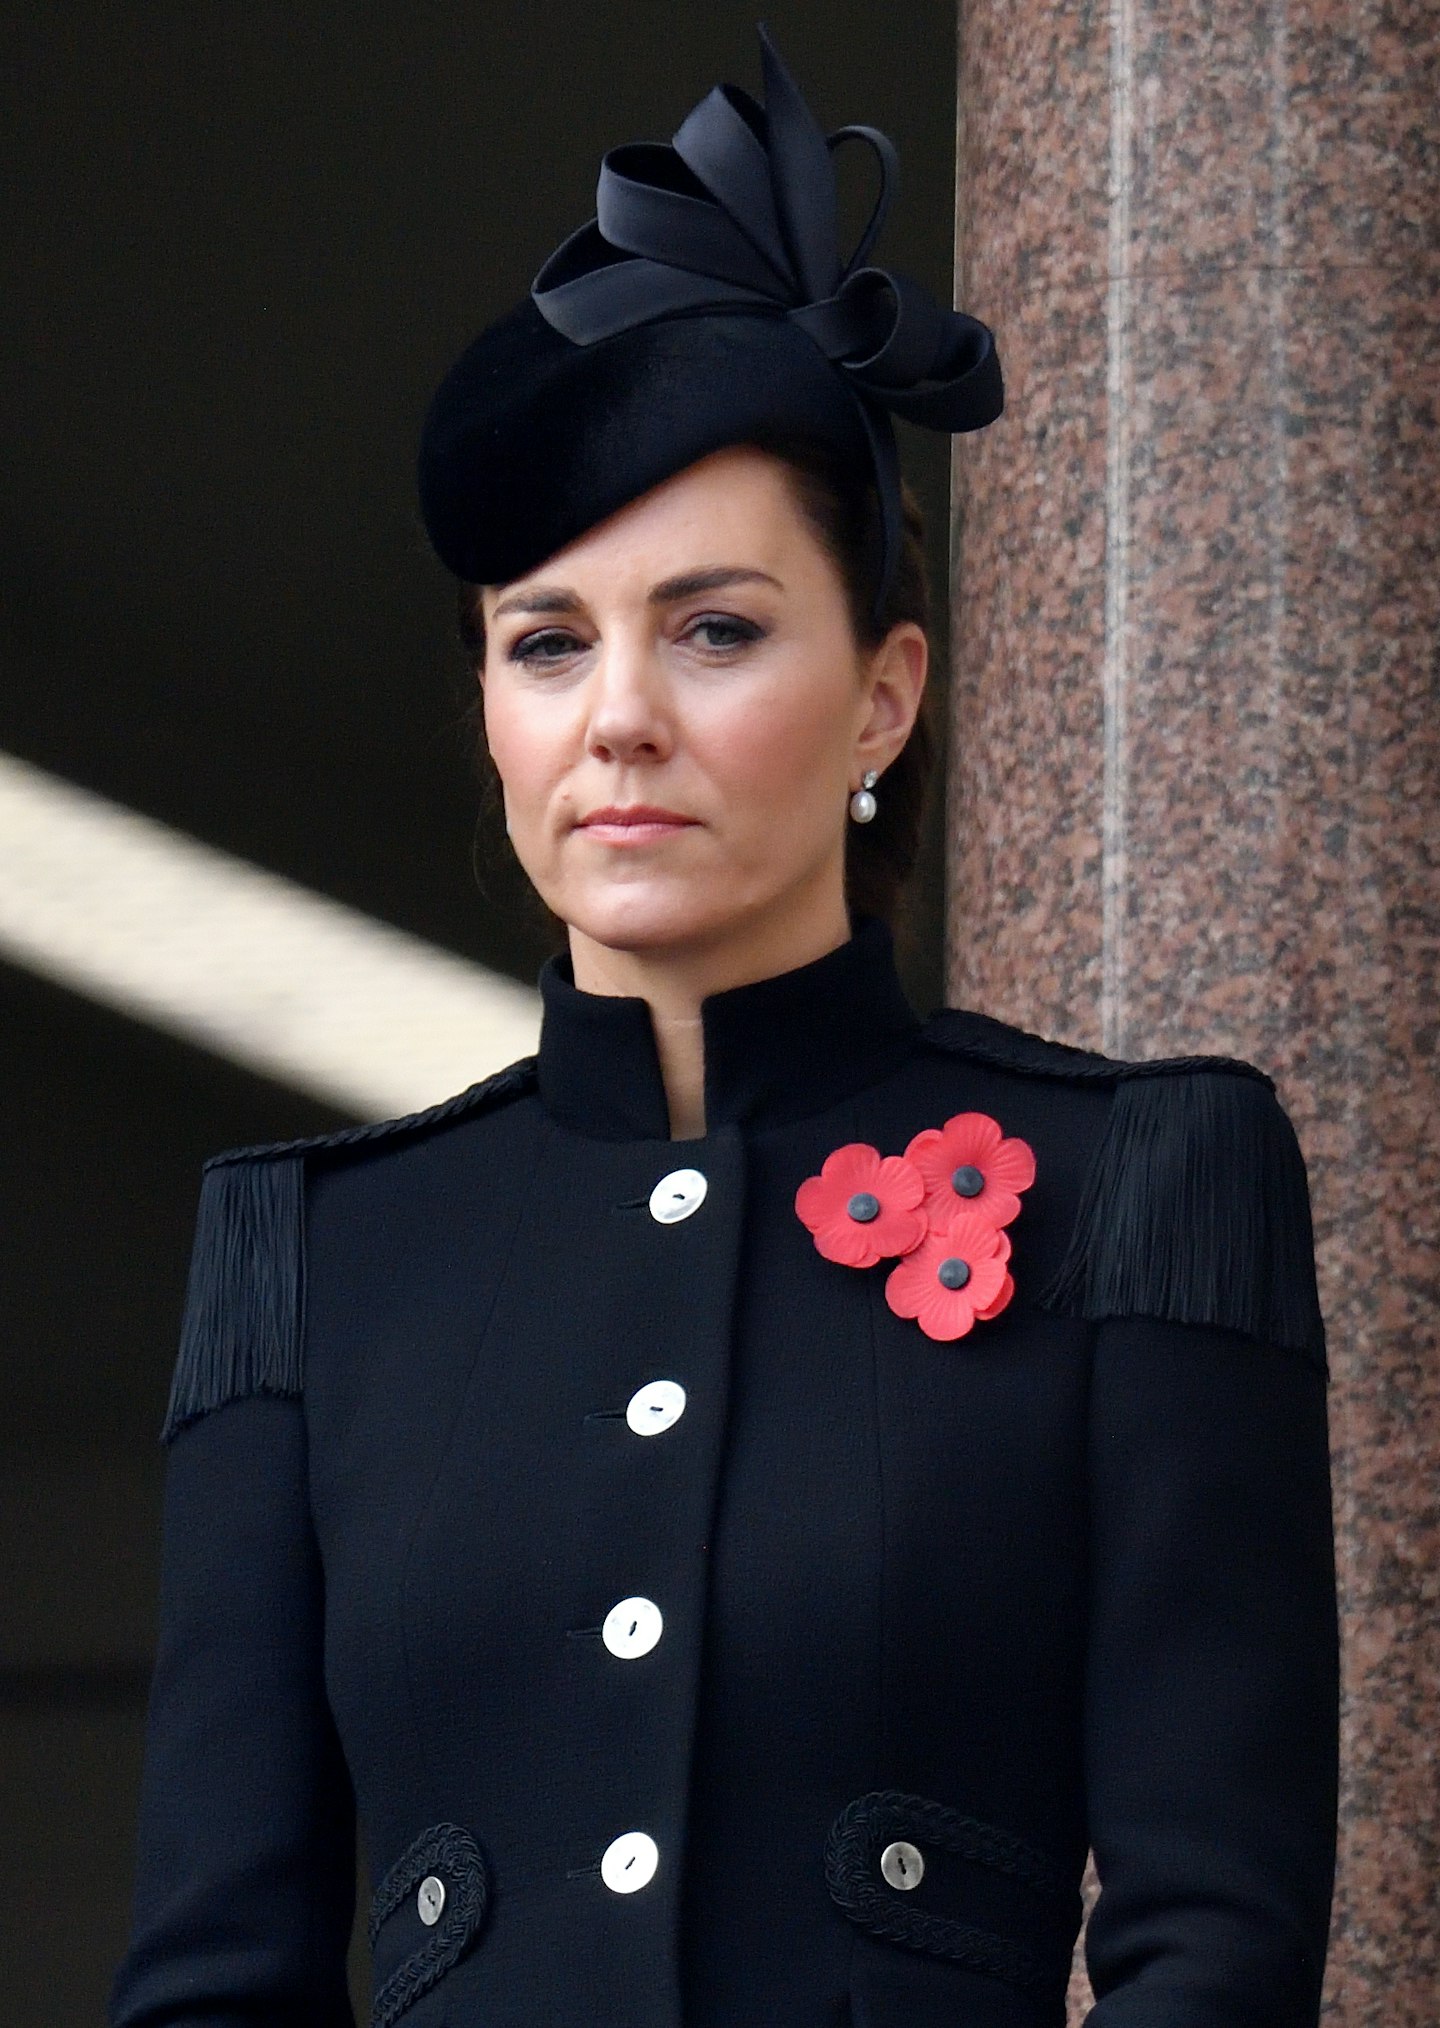 Kate Middleton wearing three poppies in 2020